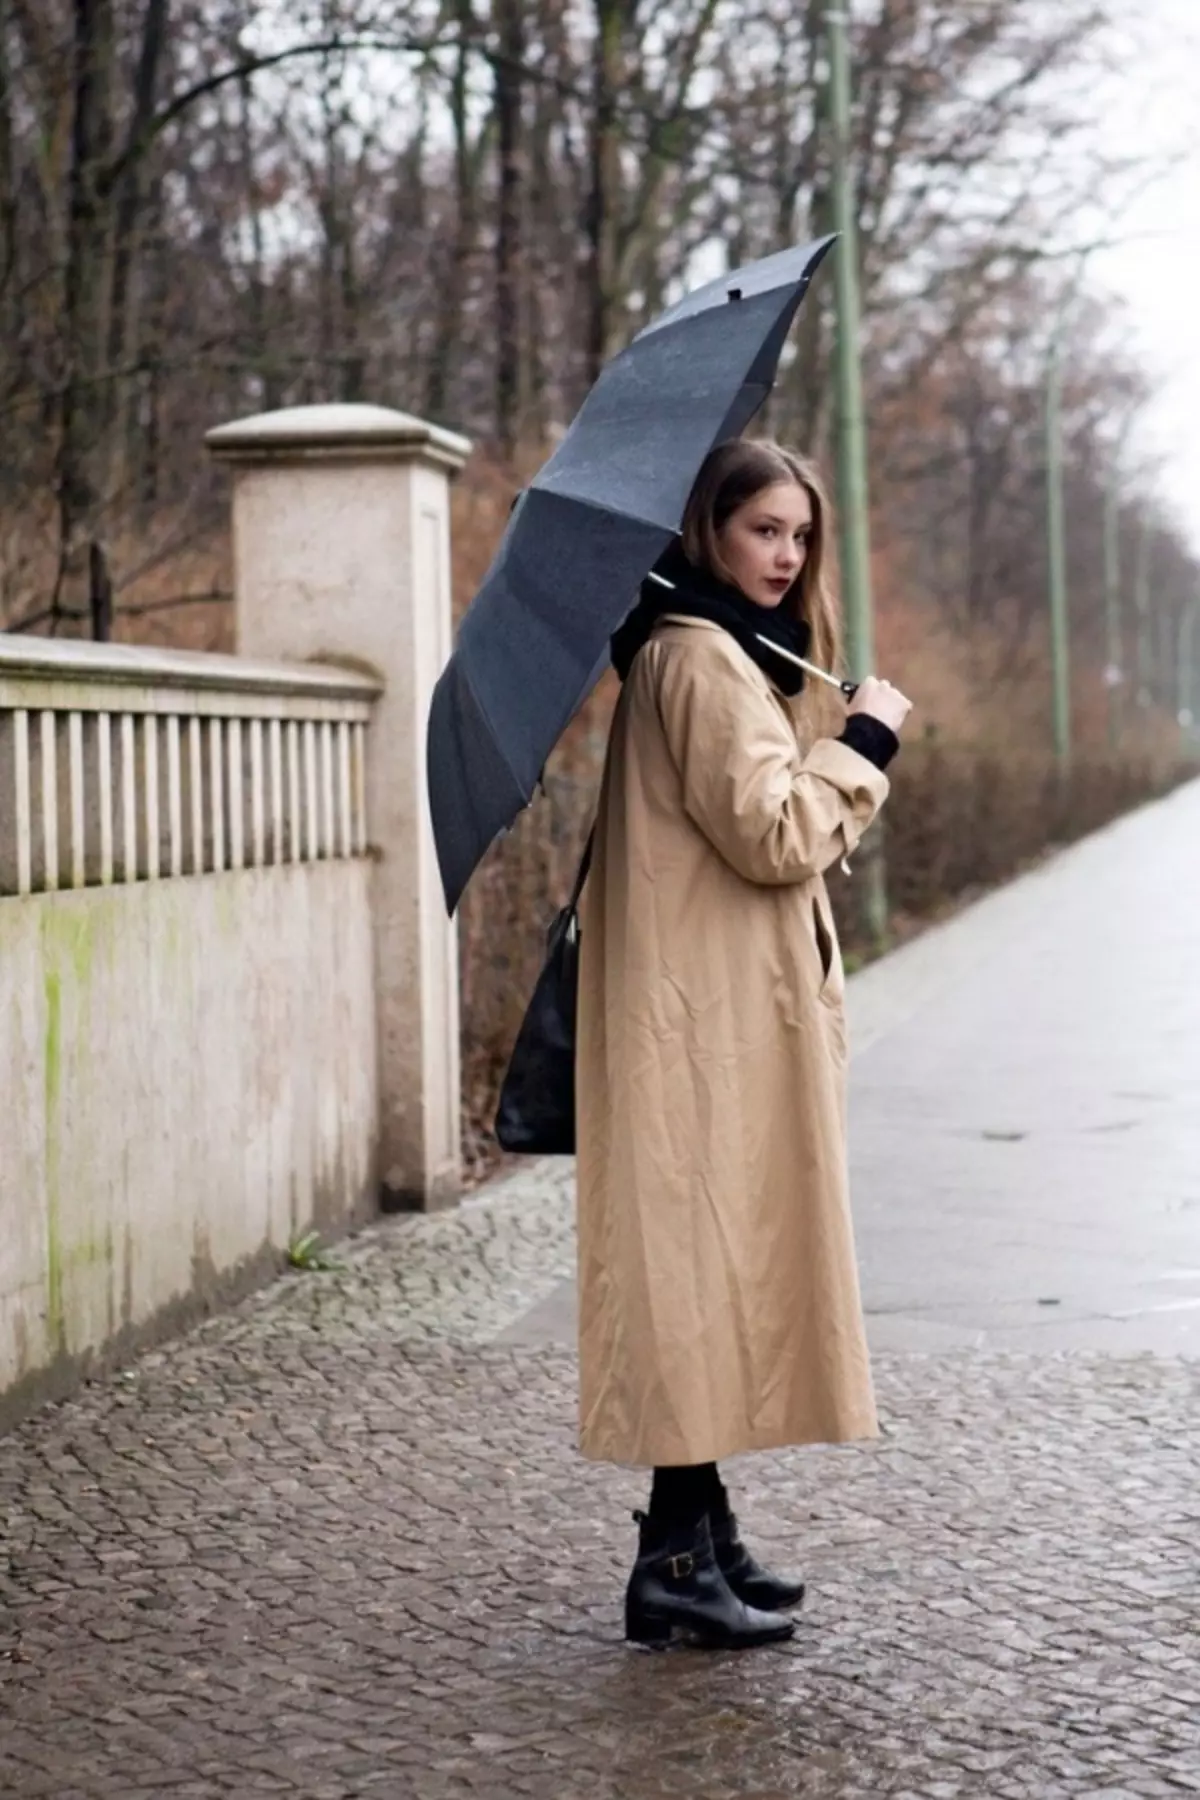 Плащ под дождь. Женщина в плаще. Женщина в пальто. Красивая девушка в плаще. Пальто и зонт.